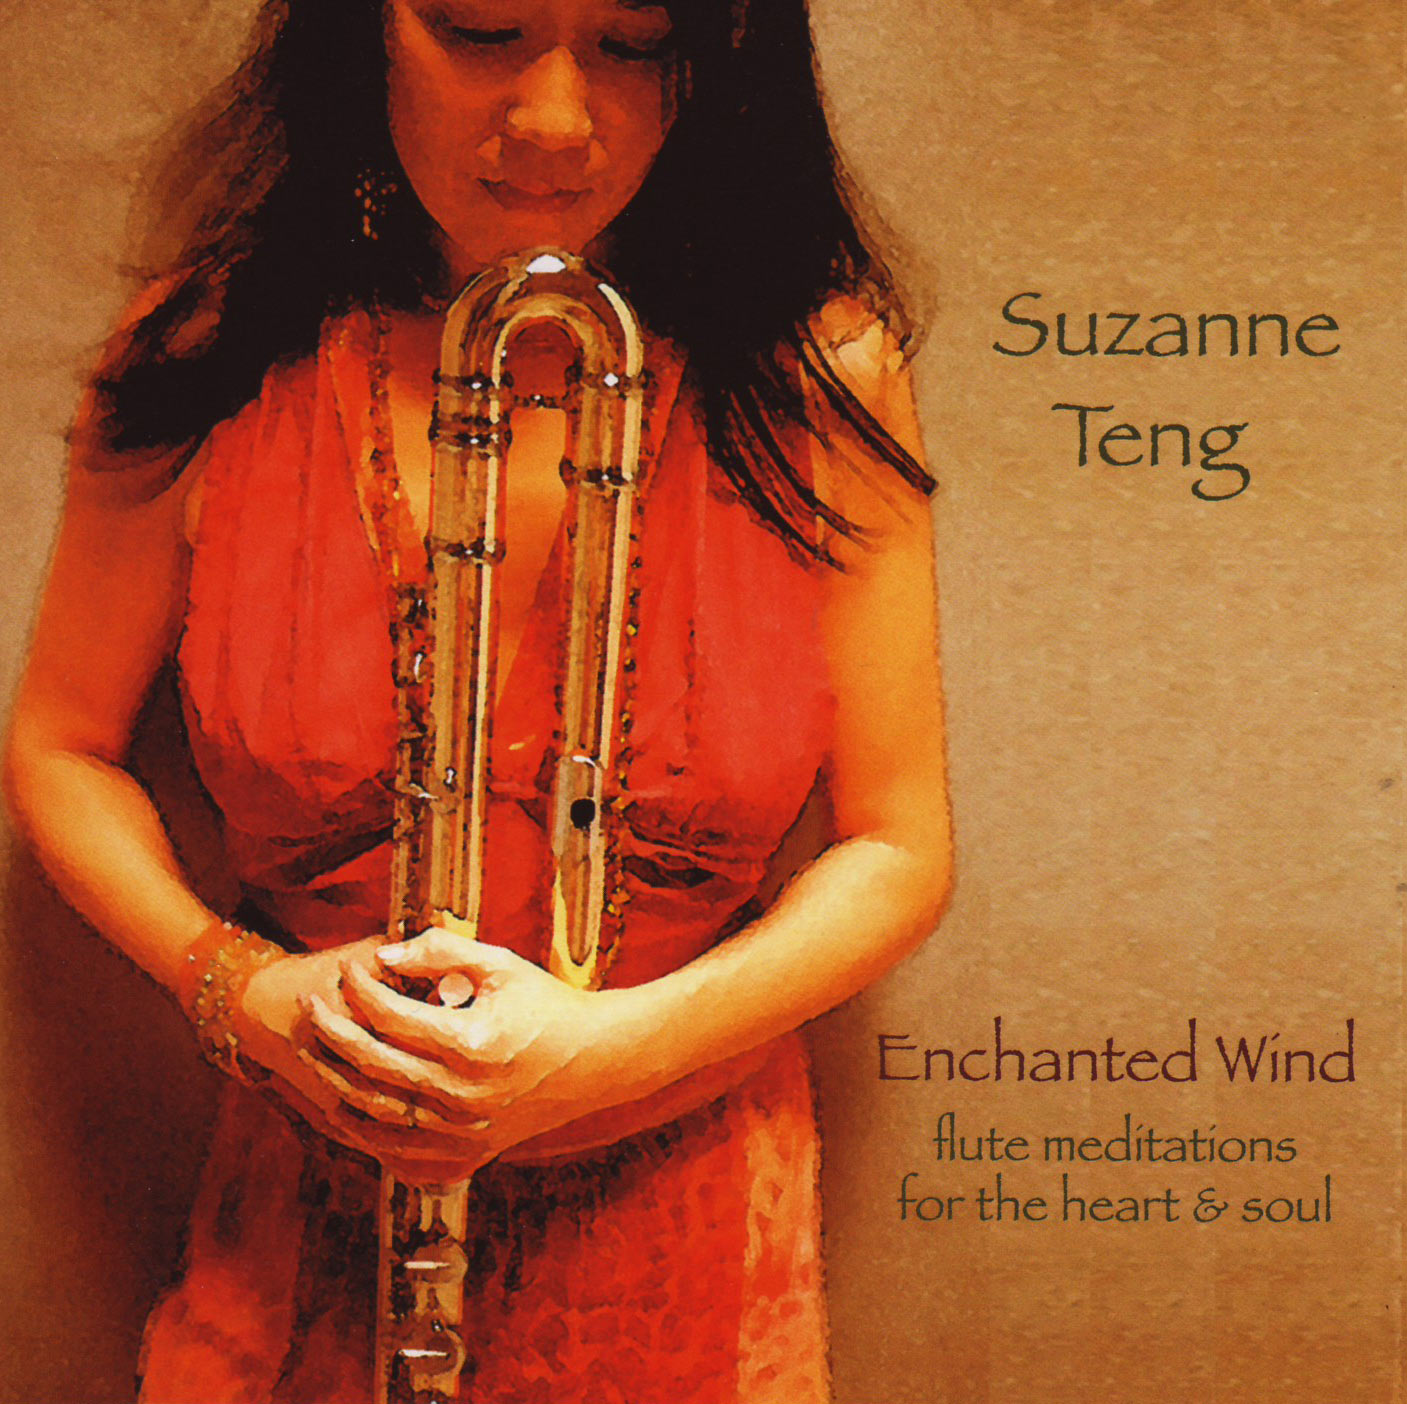 Suzanne Teng